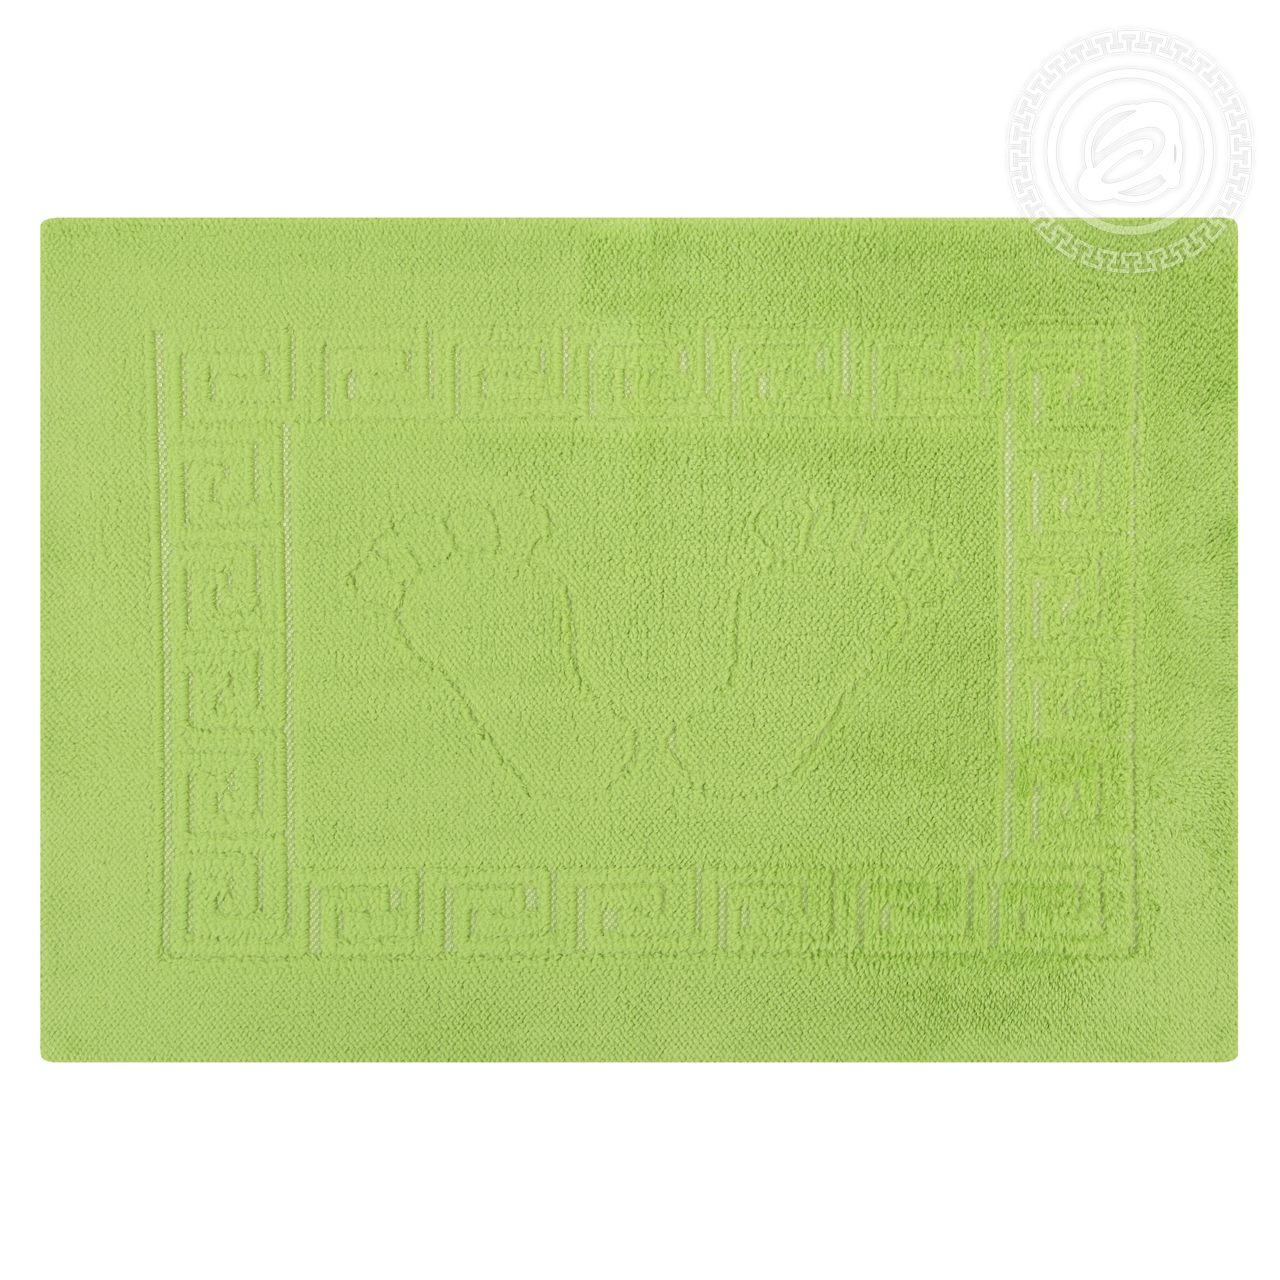 Коврик на резиной основе НОЖКИ АРТ Дизайн зеленый 45х65